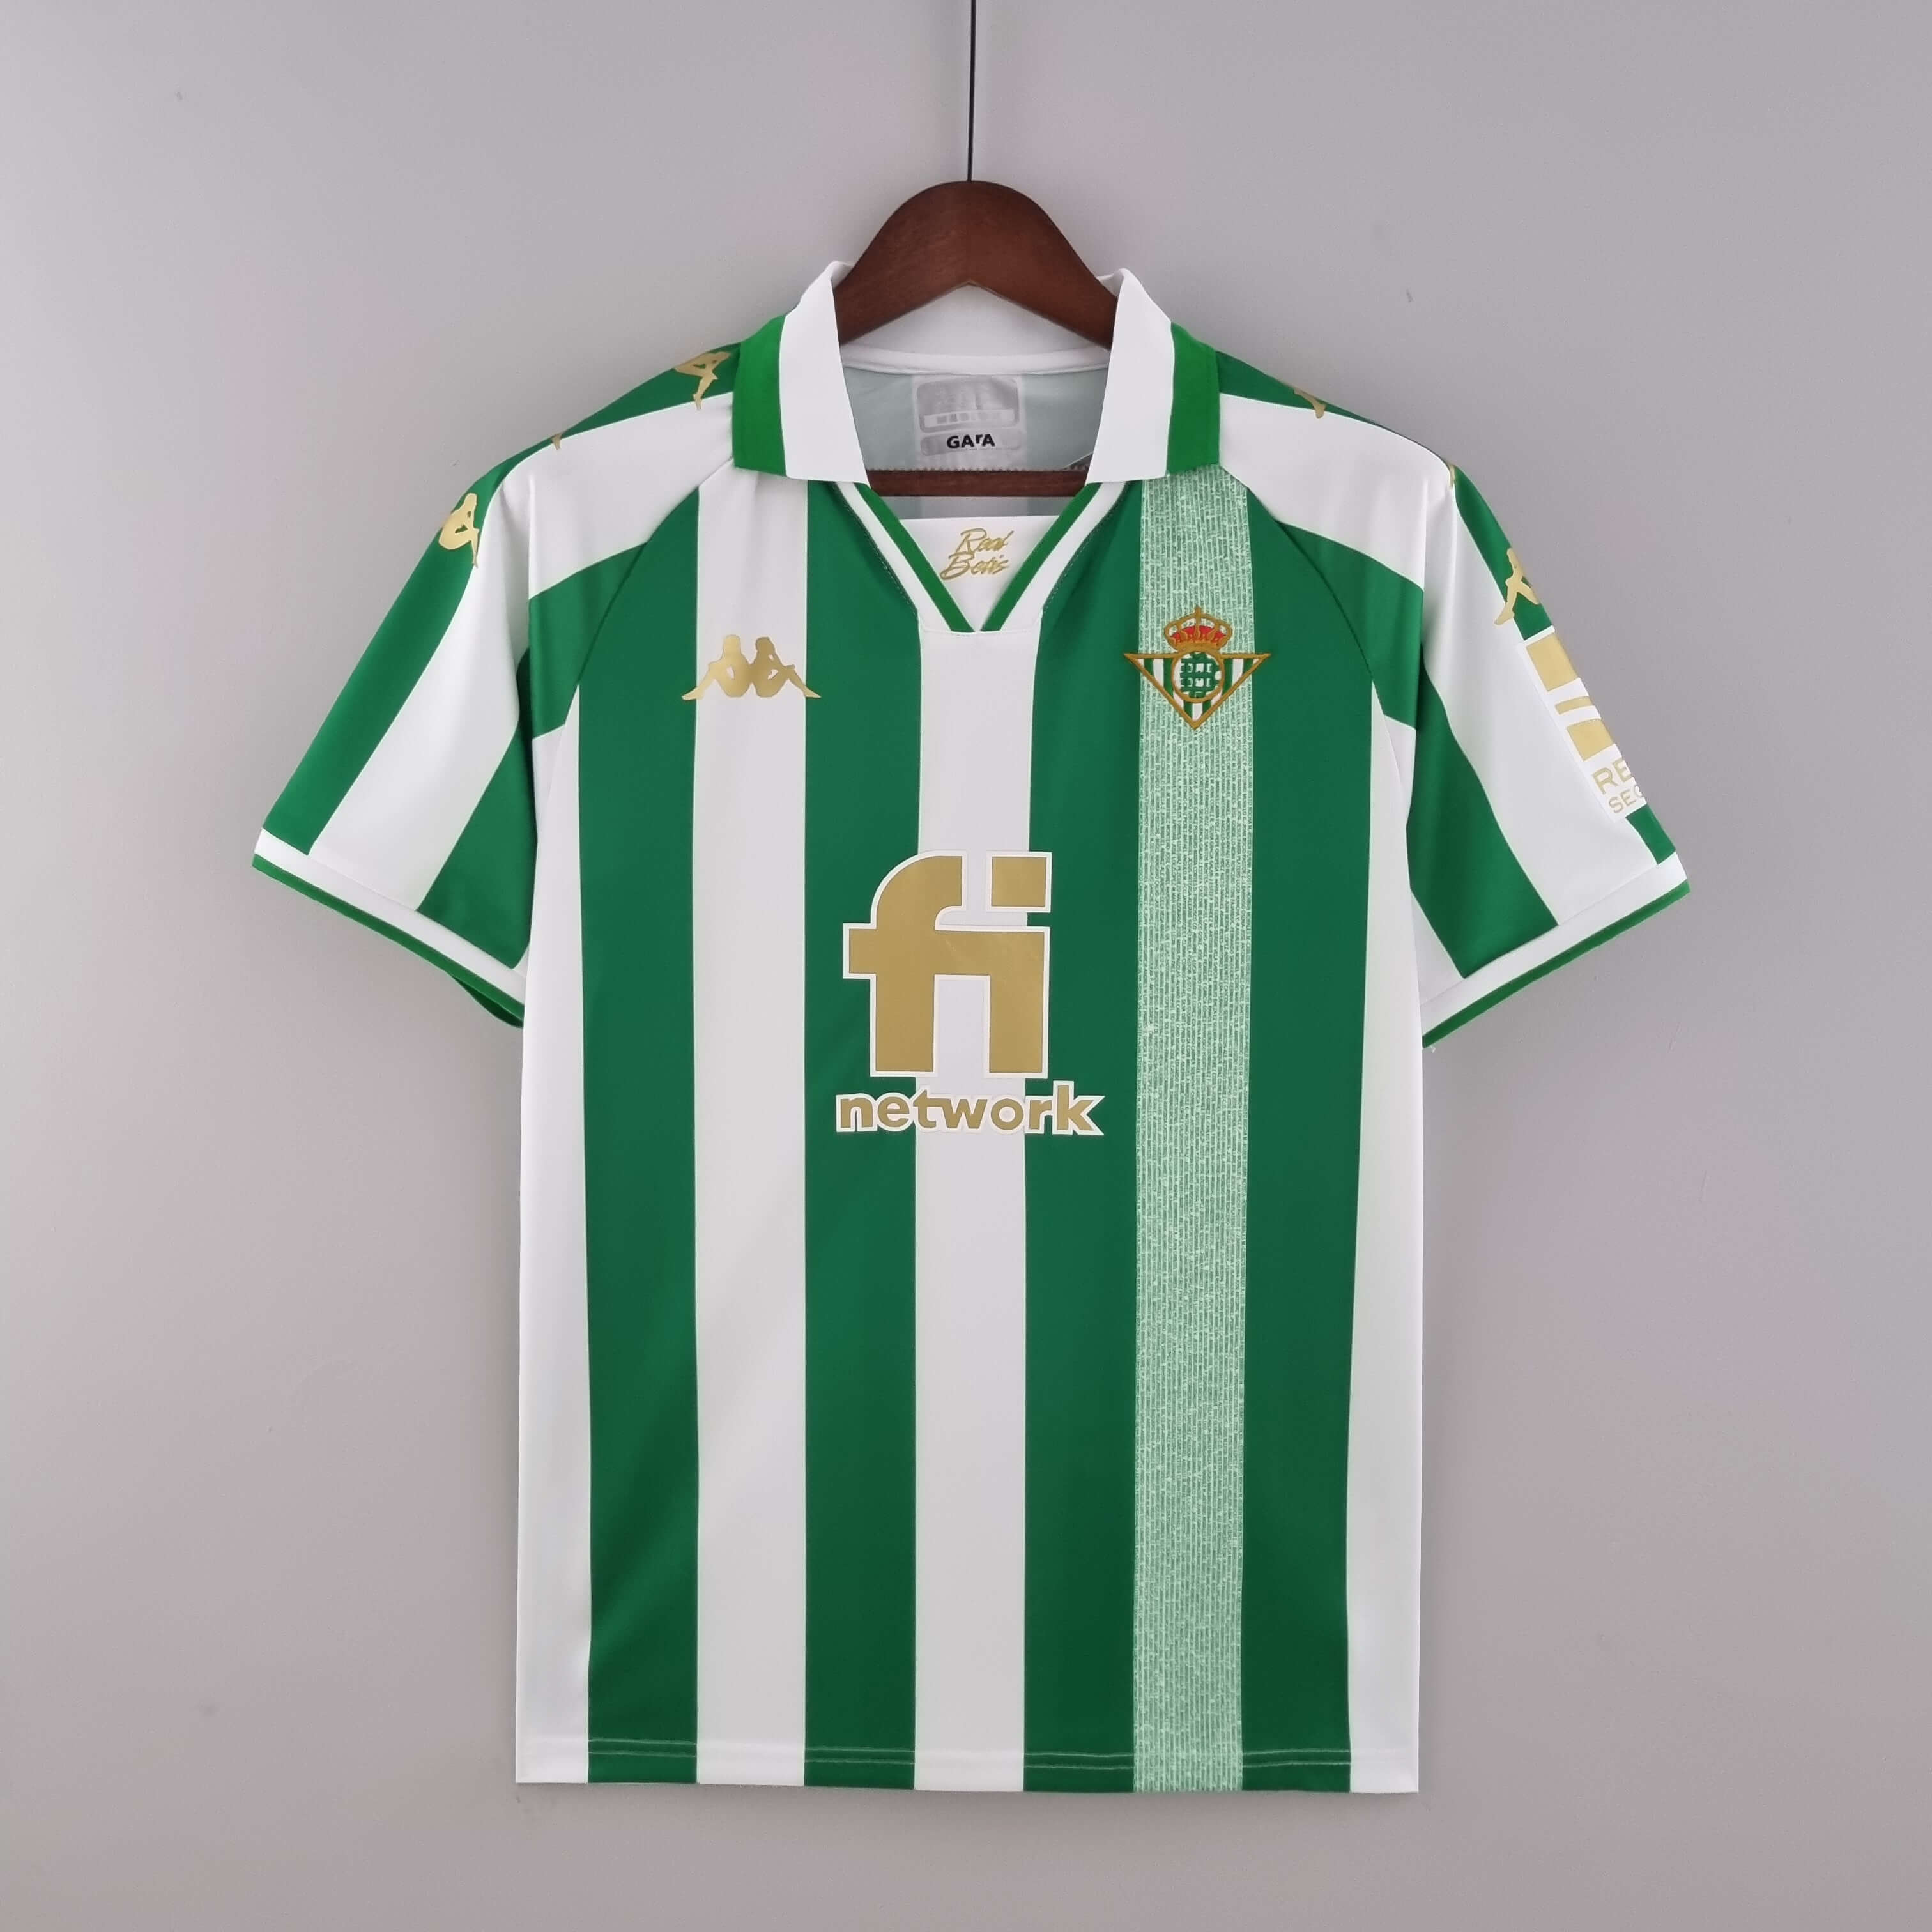 Camiseta 4a Betis Final Copa del Rey 2022 Niño